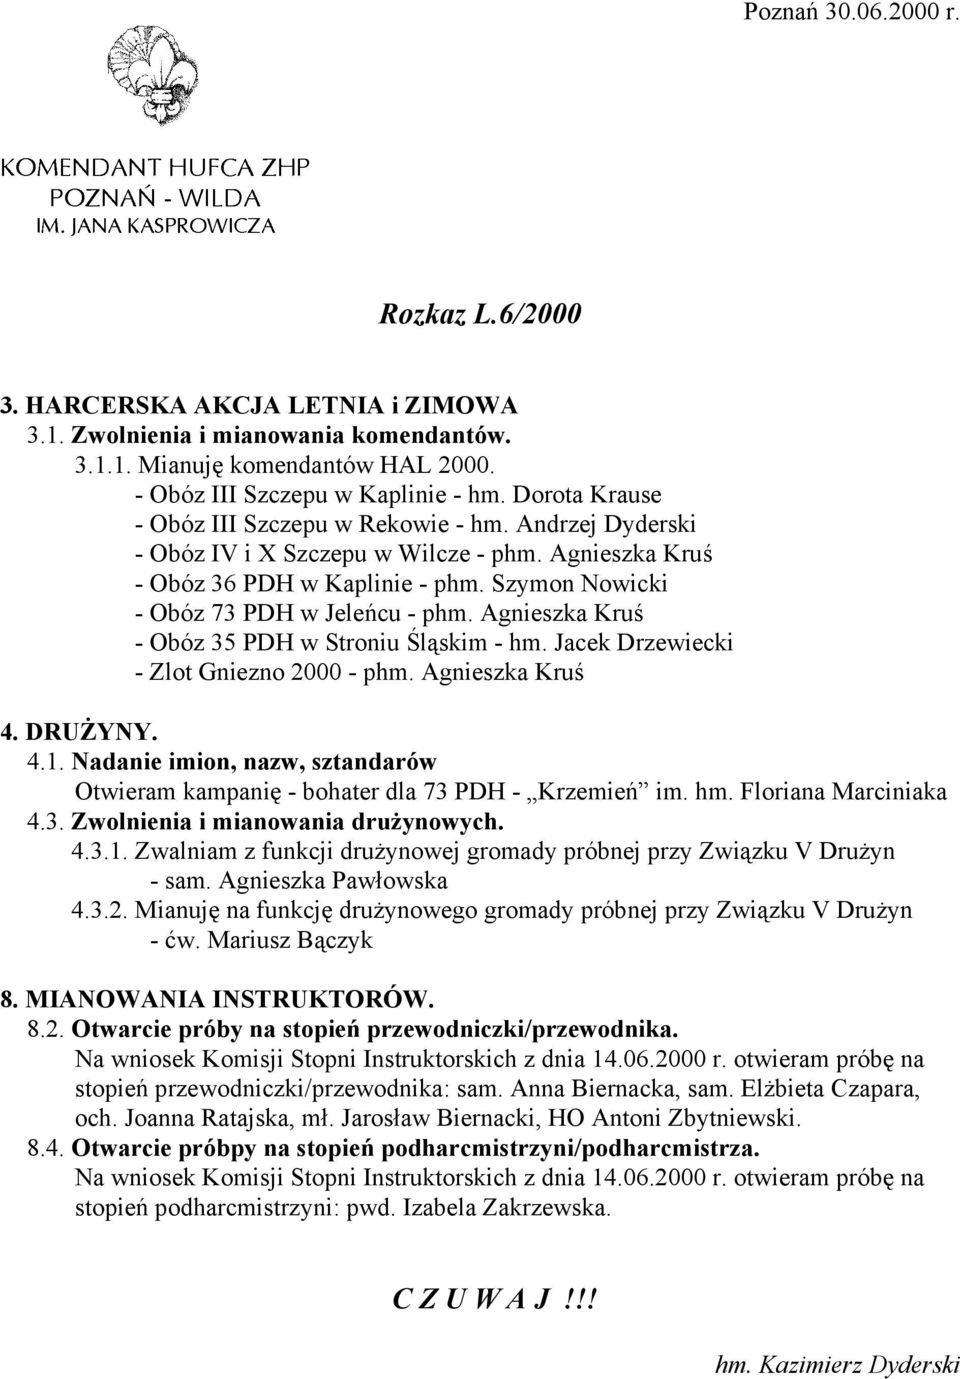 Agnieszka Kruś - Obóz 35 PDH w Stroniu Śląskim - hm. Jacek Drzewiecki - Zlot Gniezno 2000 - phm. Agnieszka Kruś 4.1.